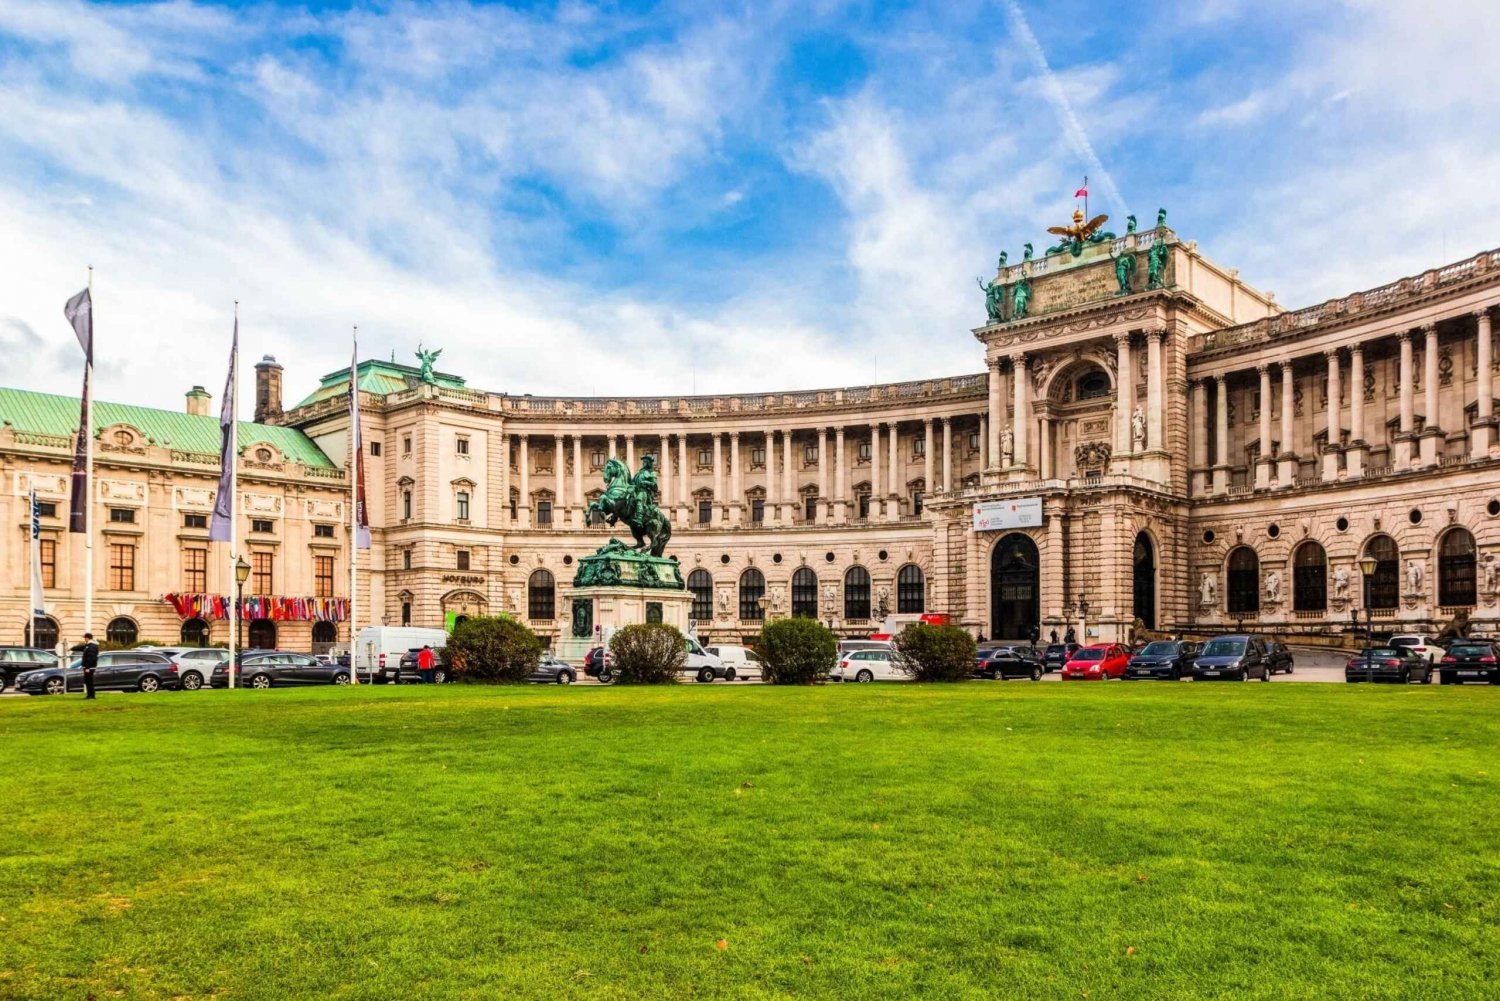 Viena: ingresso sem fila para Hofburg e excursão ao Museu Sisi